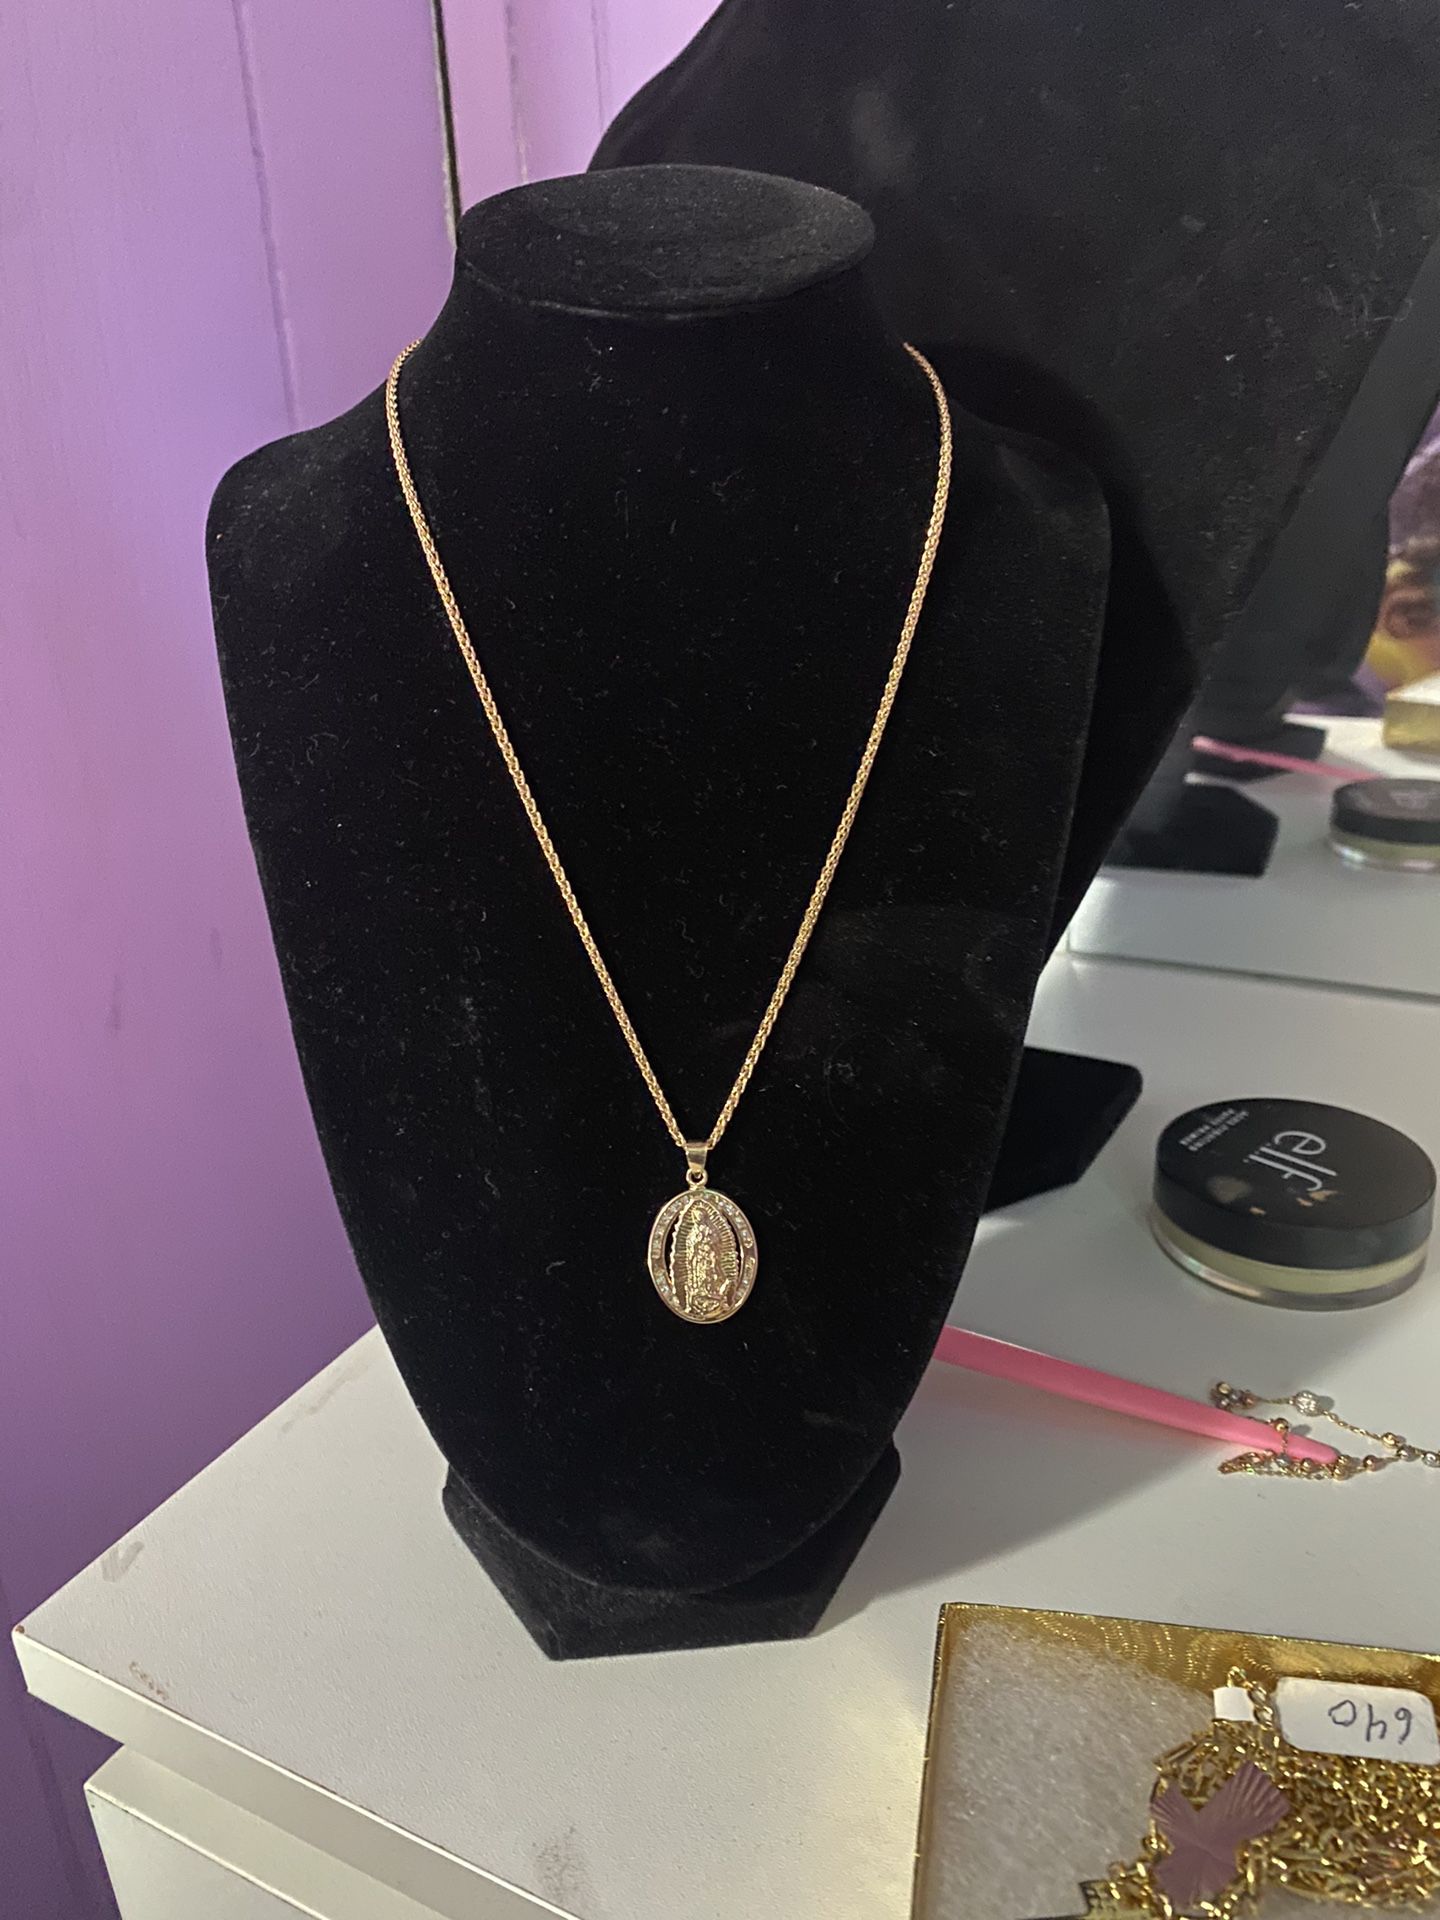 Cadena De 14k Oro-14k Gold Necklace